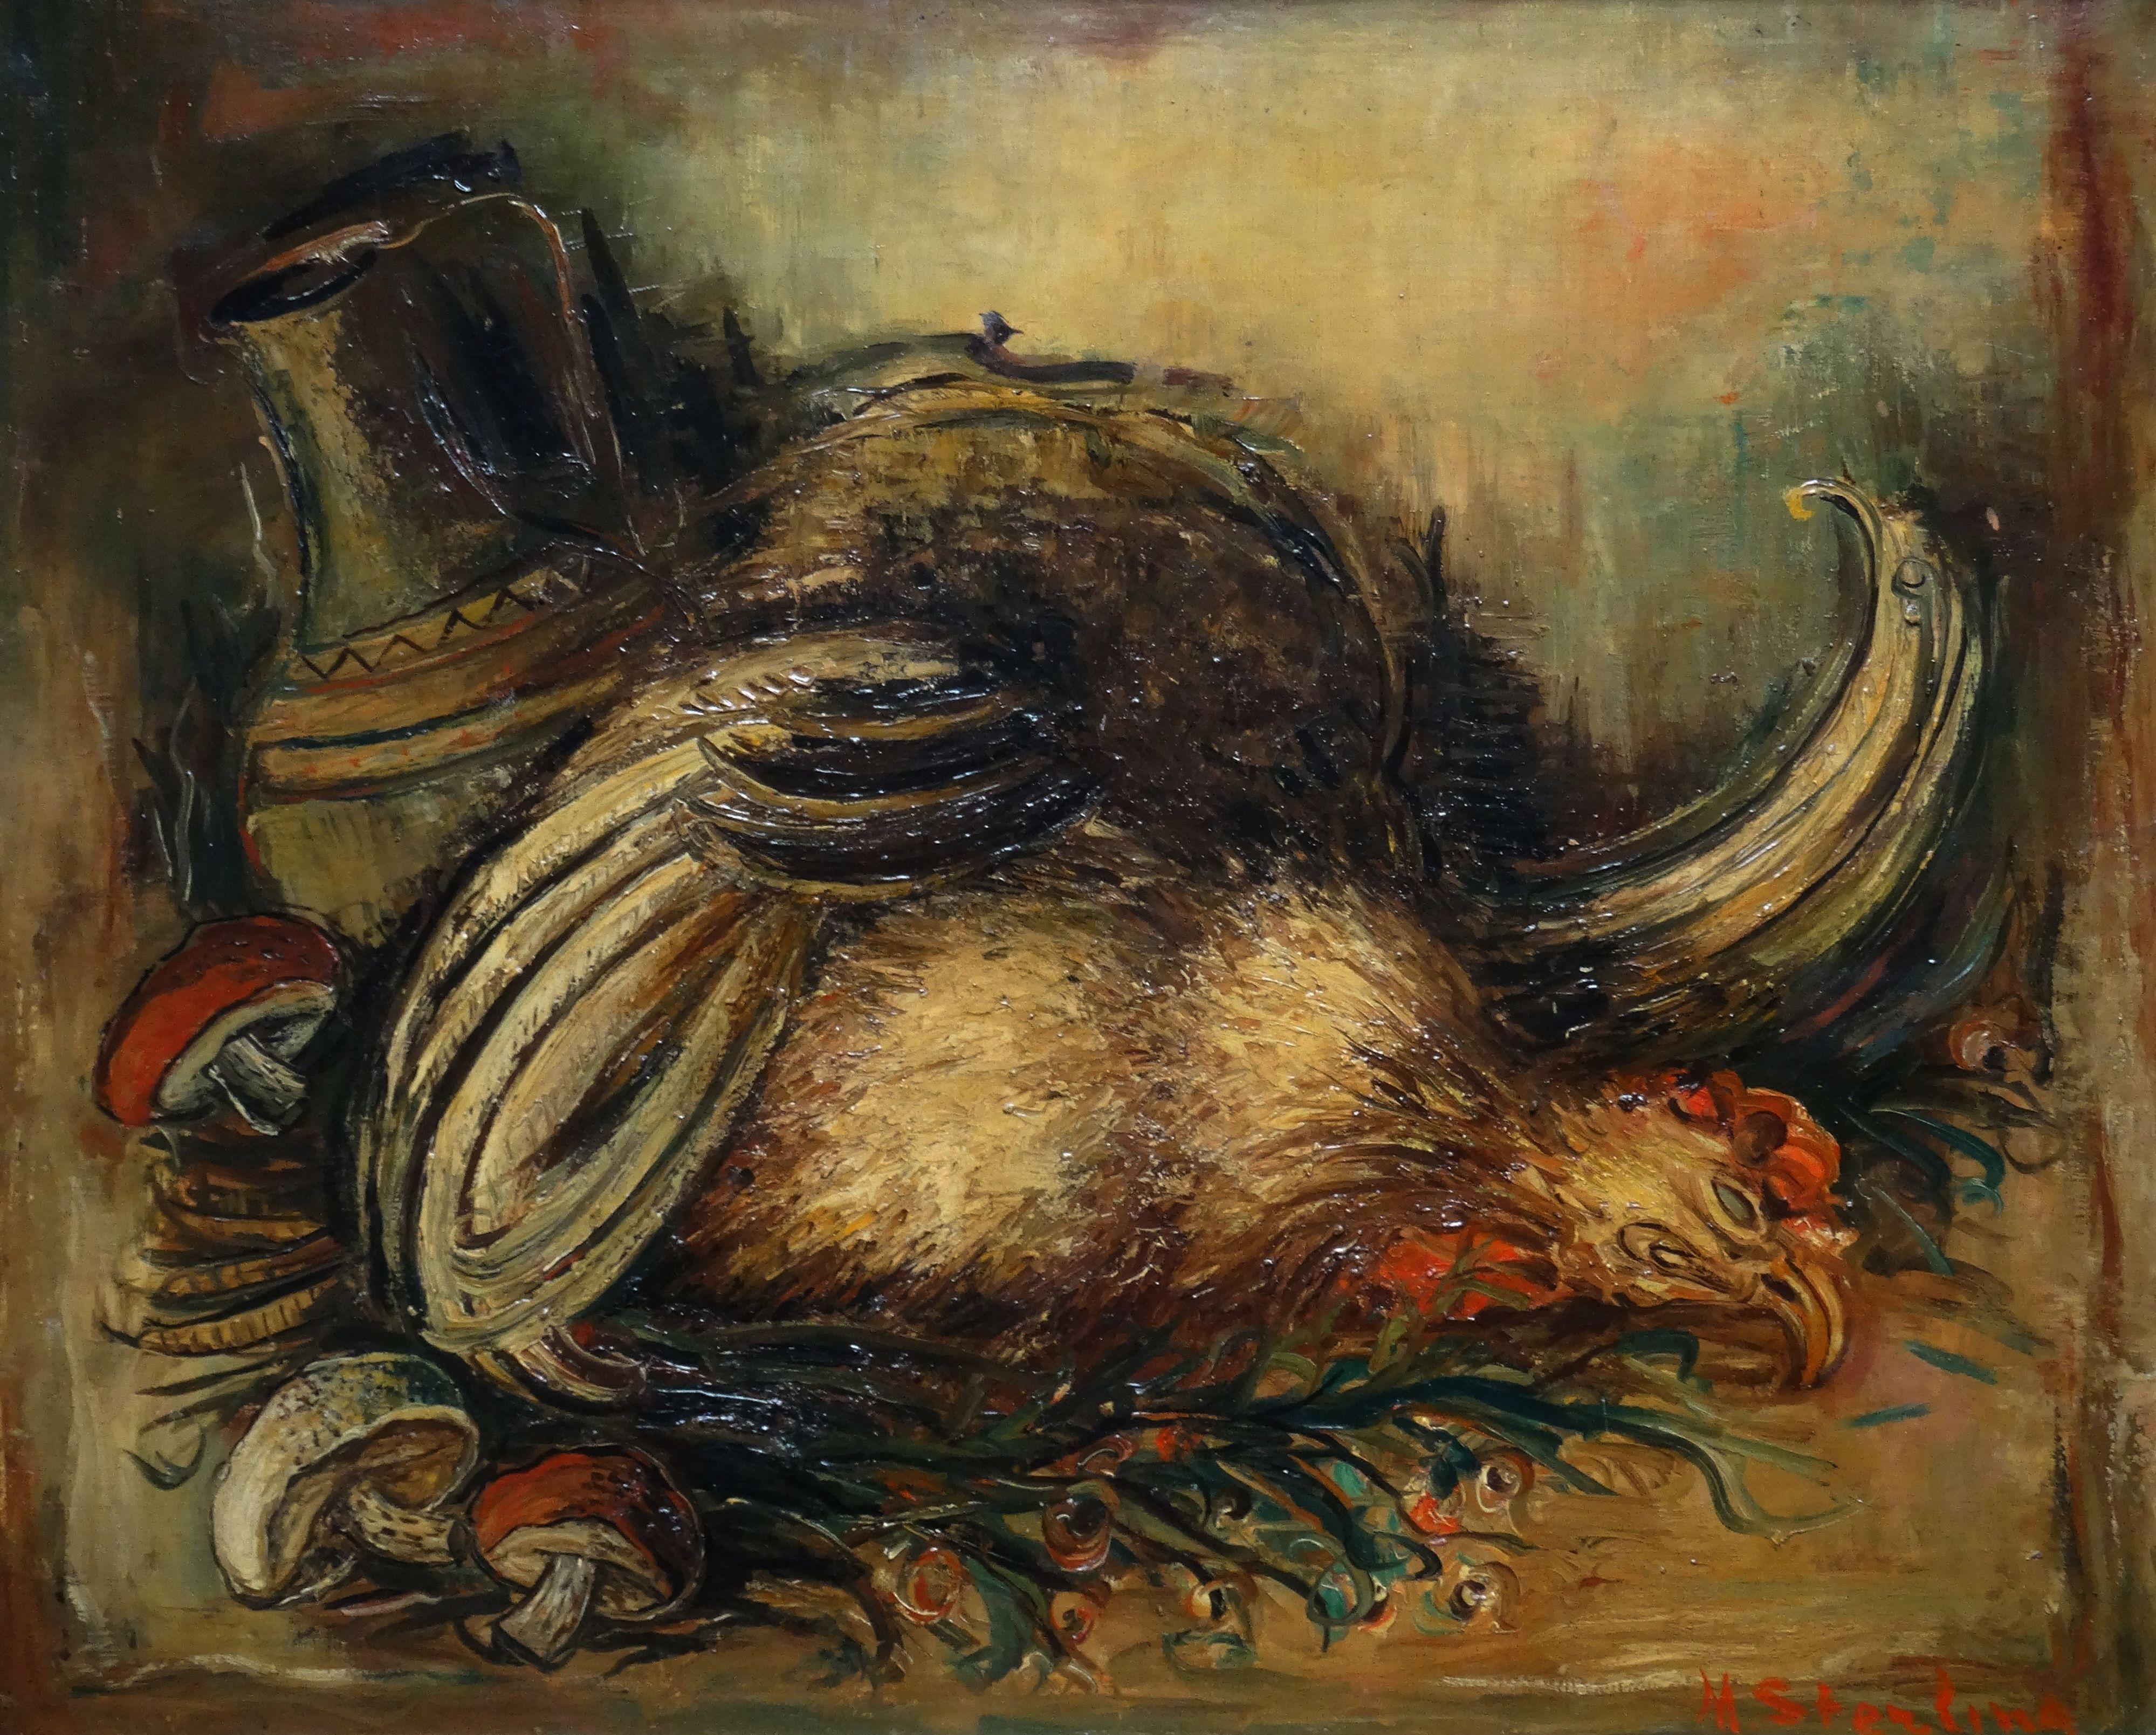 Leben mit Hühnern. Öl auf Leinwand, 50 x 61 cm